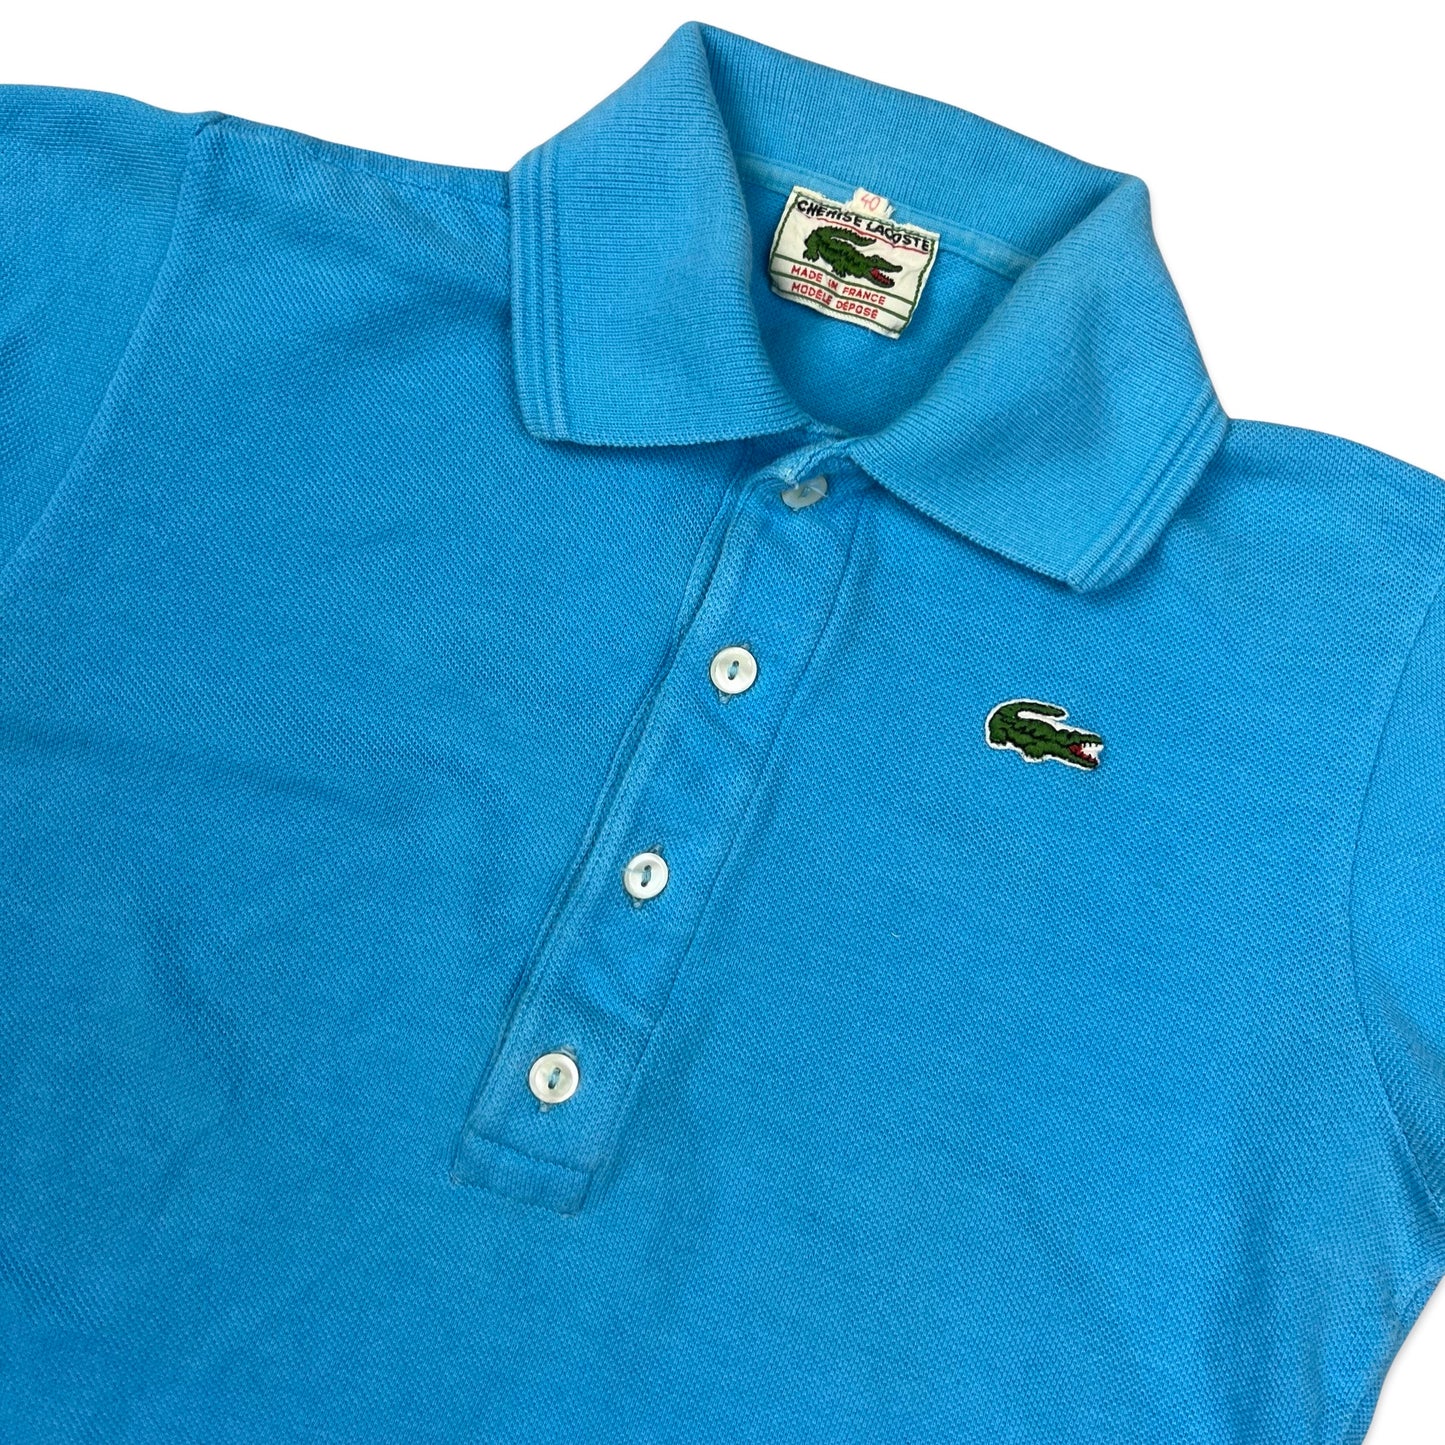 Vintage 80s Chemise Lacoste Blue Polo Shirt 6 8